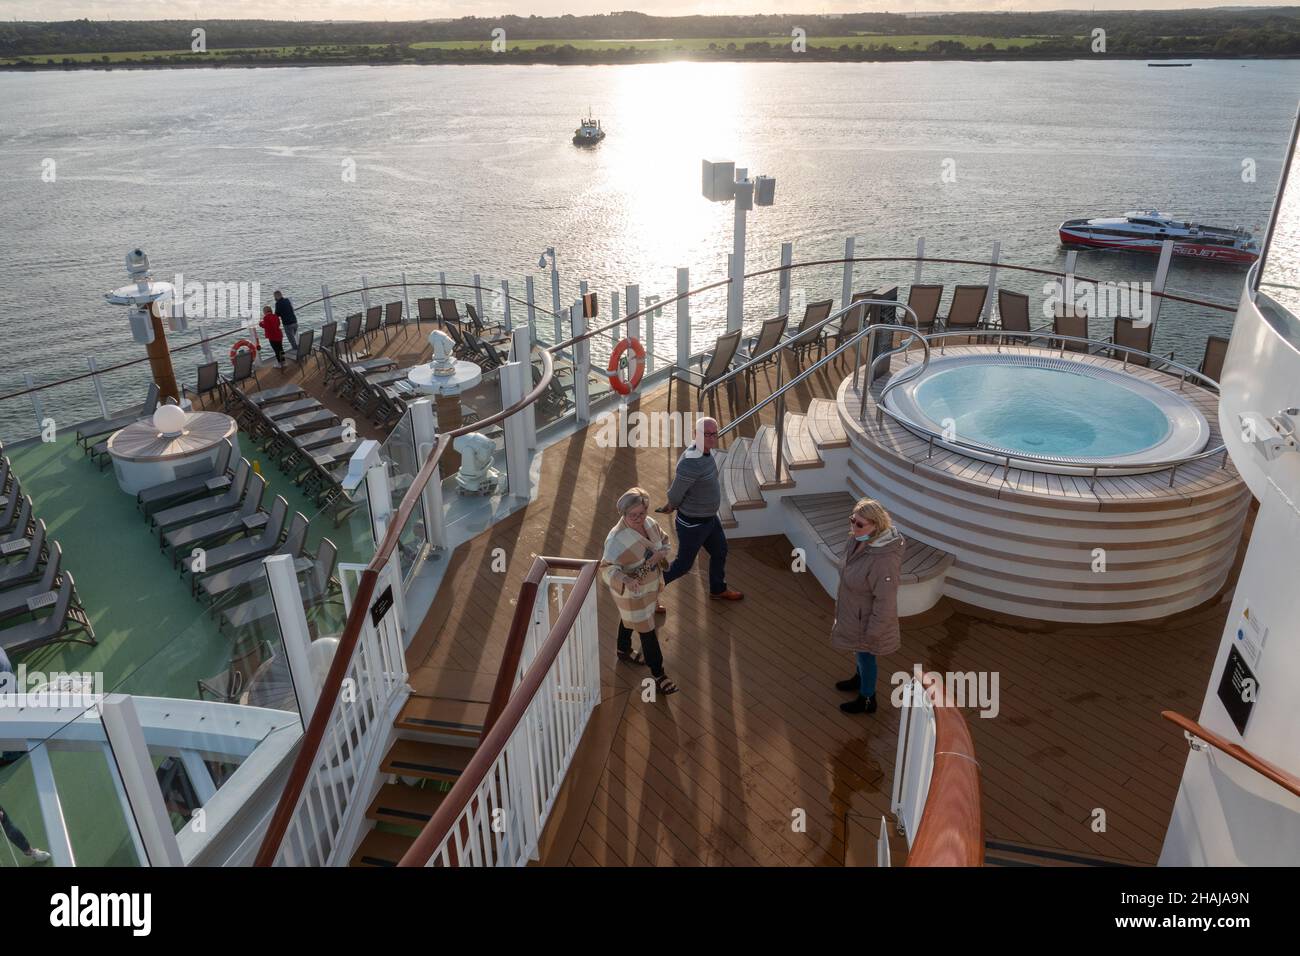 P & O cruise ship, Iona. Stock Photo